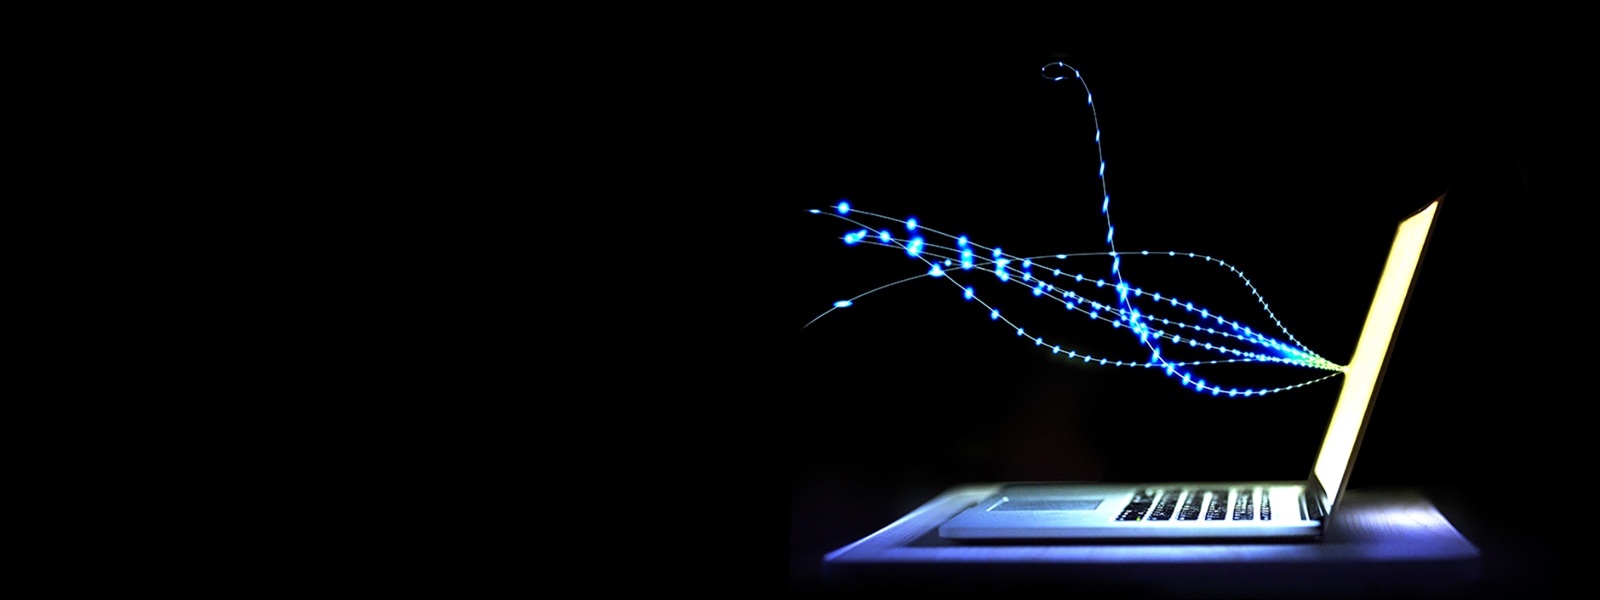 Ein Laptop mit einer Darstellung von Lichtstrahlen, die vom Bildschirm ausgehen.